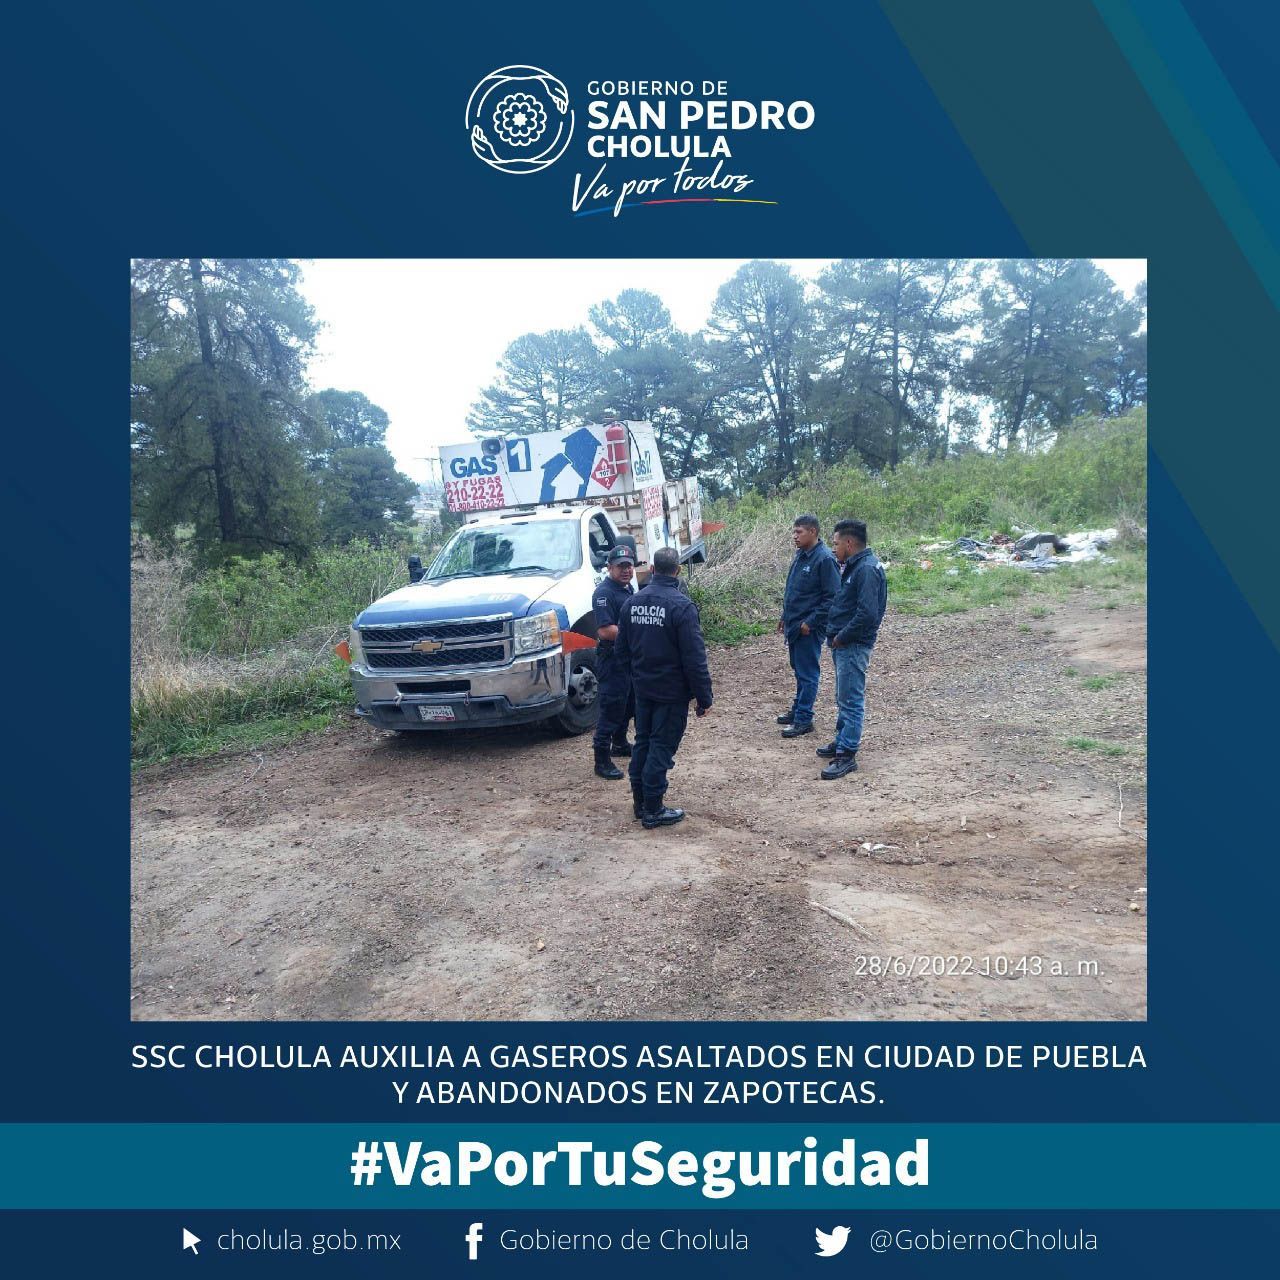 policias san pedro cholula auxilian gaseros abandonados zapotecas